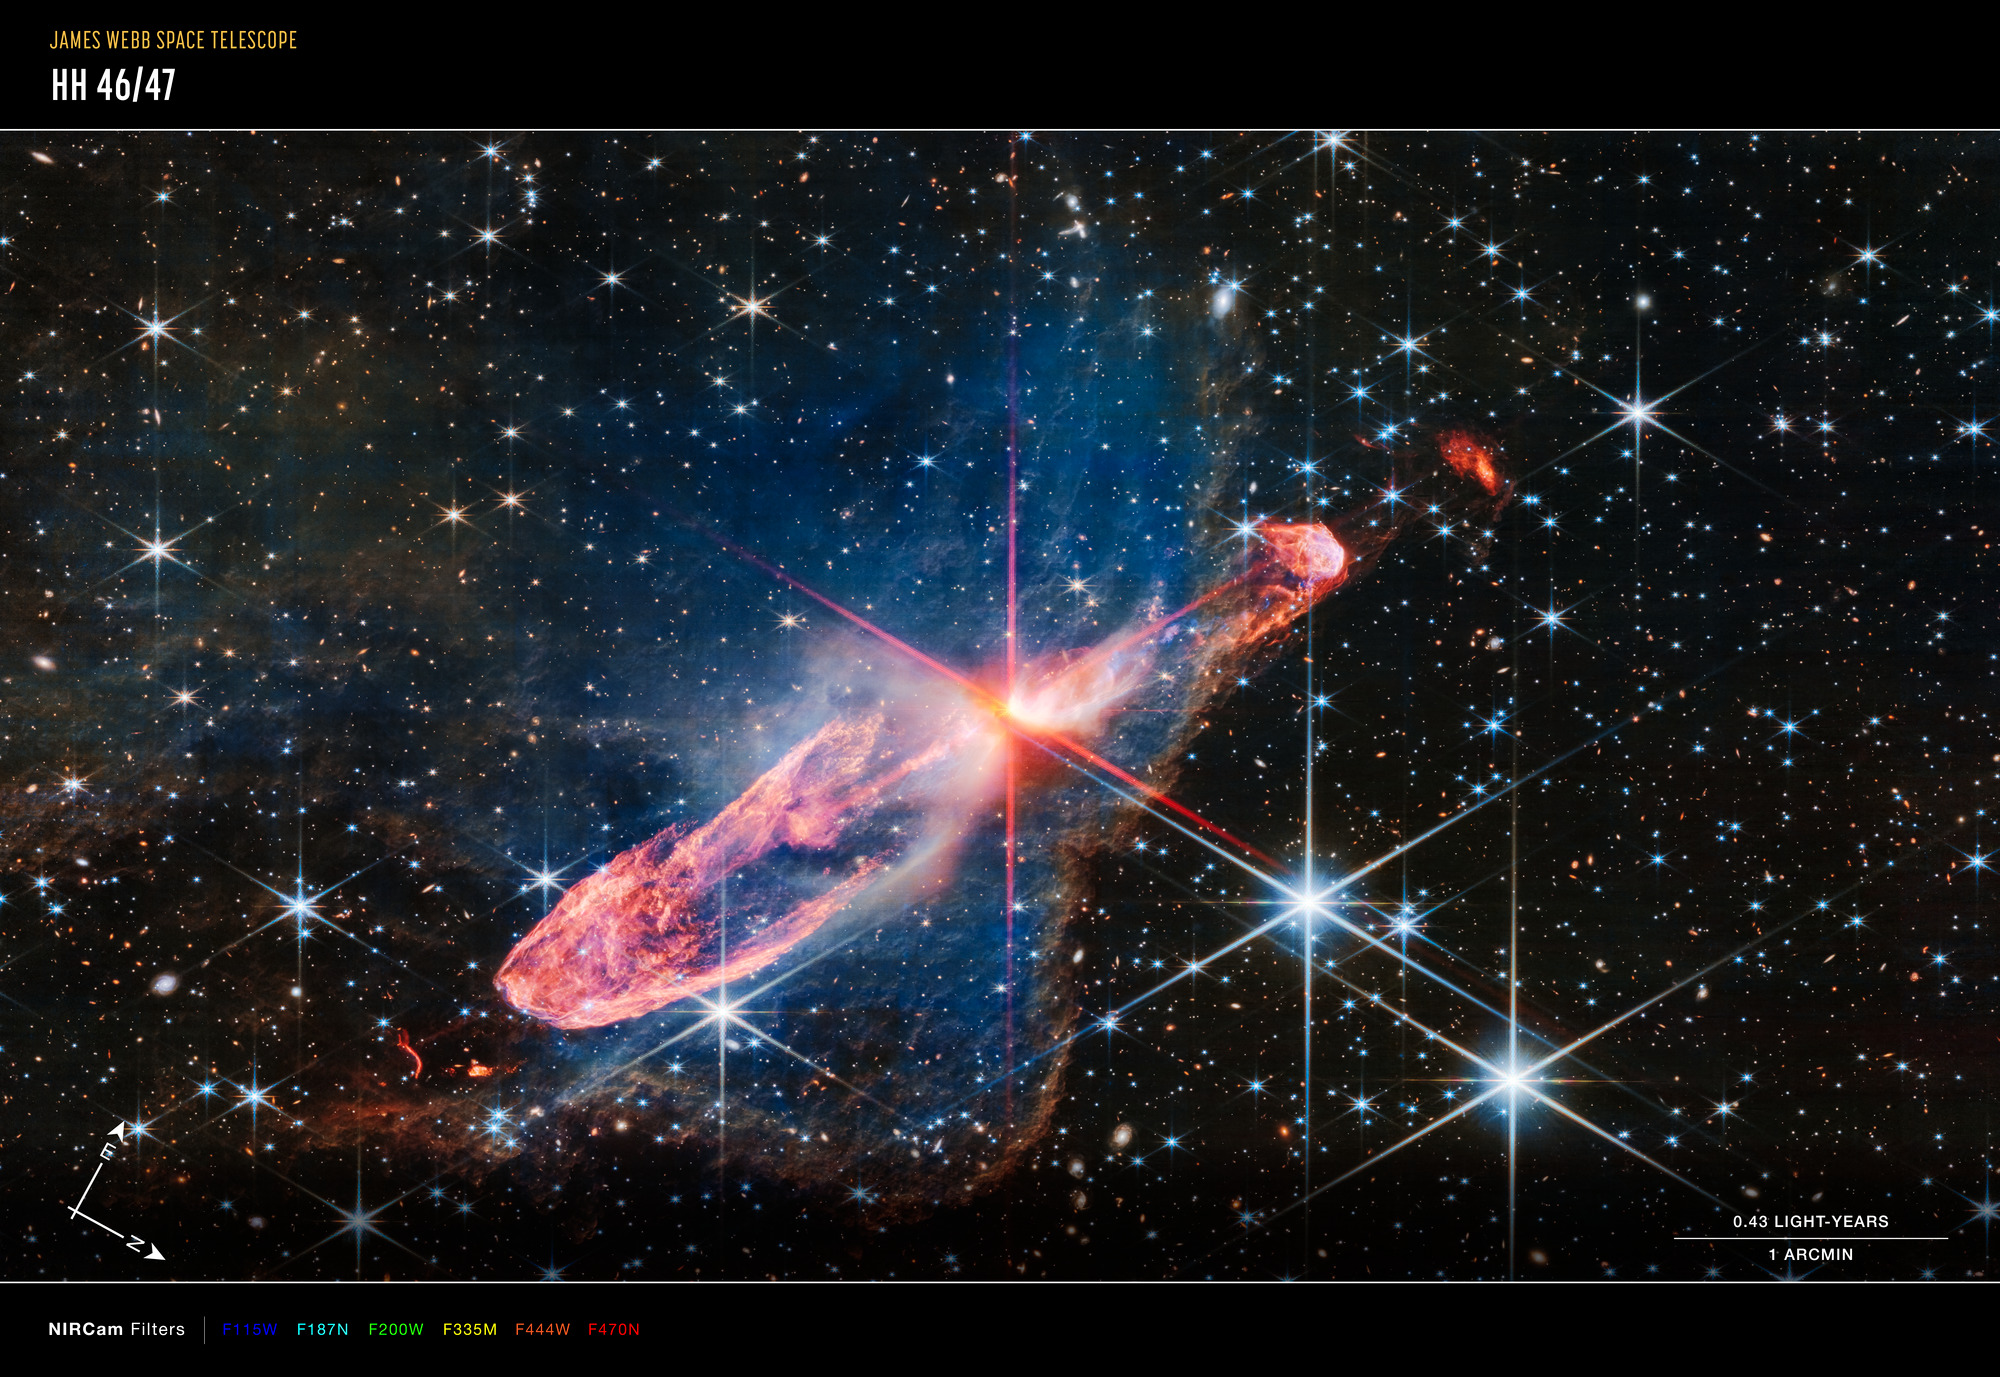 Na ilustracji: Teleskop Webba sfotografował w wysokiej rozdzielczości za pomocą kamery NIRCam (bliska podczerwień) ściśle ze sobą związaną, aktywną parę tworzących się gwiazd, znaną jako obiekt Herbig-Haro 46/47 (HH 46/47). Rodzące się gwiazdy znajdują się w centrum zdjęcia w pobliżu miejsca, skąd wychodzą charakterystyczne czerwone promienie dyfrakcyjne („spajki”) będące efektem instrumentalnym spowodowanym konstrukcją Teleskopu Webba. Powstające gwiazdy są głęboko schowane i wyglądają jak pomarańczowo-biała plamka świetlna. Są otoczone przez dysk gazowo-pyłowy, z którego akreują materię. Na zdjęciu w barwach niebieska / niebieskozielona / zielona / żółta / pomarańczowa / czerwona pokazano obserwacje dla filtrów o średnich długościach fali odpowiednio 1,15 / 1,87 / 2,00 / 3,35 / 4,44 / 4,70 μm. Źródło: NASA, ESA, CSA, Joseph DePasquale (STScI)